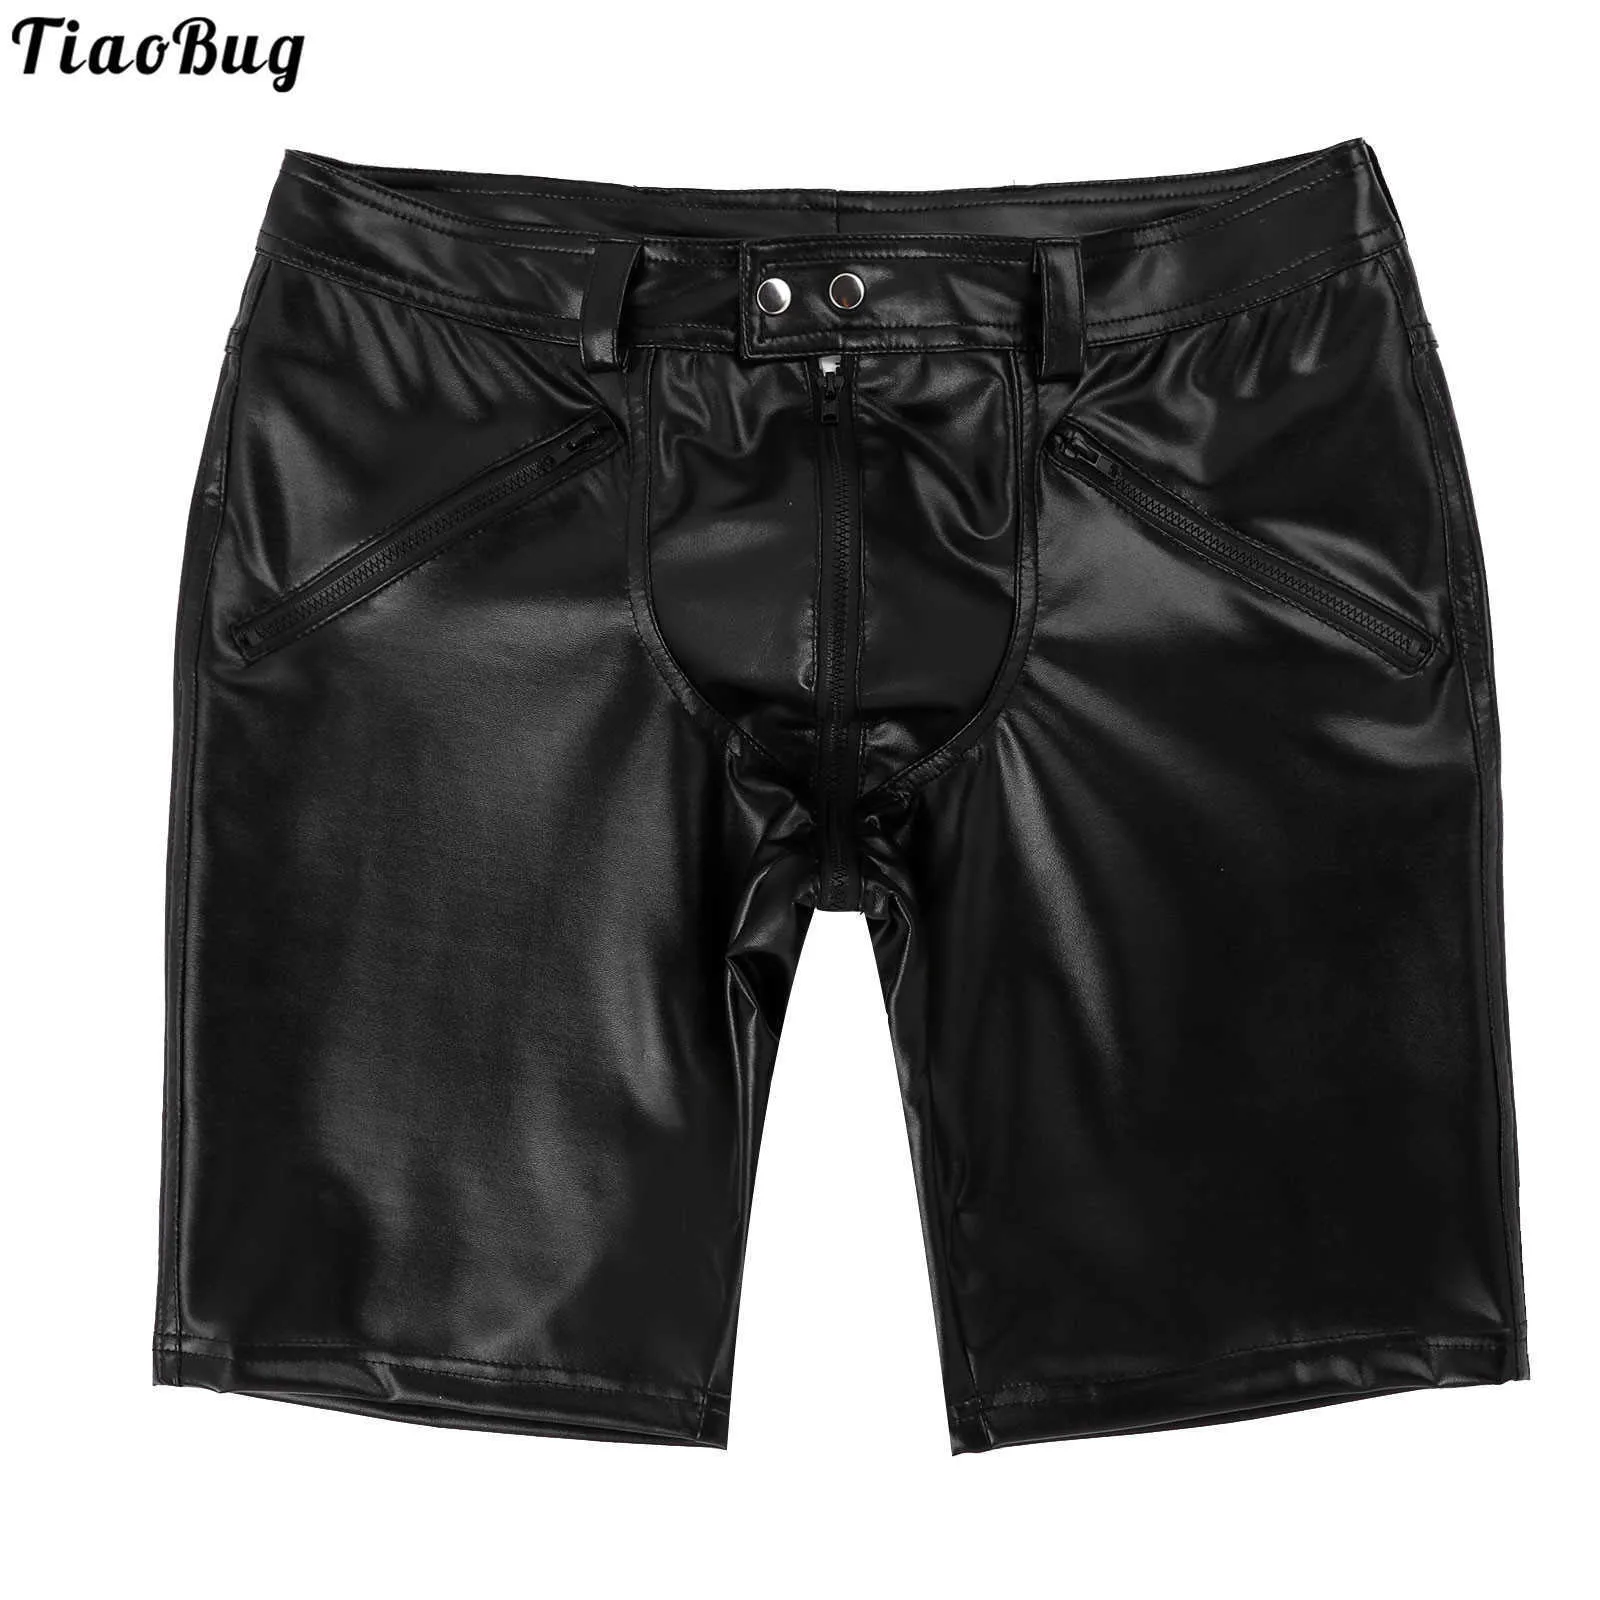 Tiaobug czarni mężczyźni seksowne miękkie skórzane spodnie środkowe pełne zamek błyskawiczny przyciski przyciśnięcie przyciągania zamknięcia treningu siłowni x0705